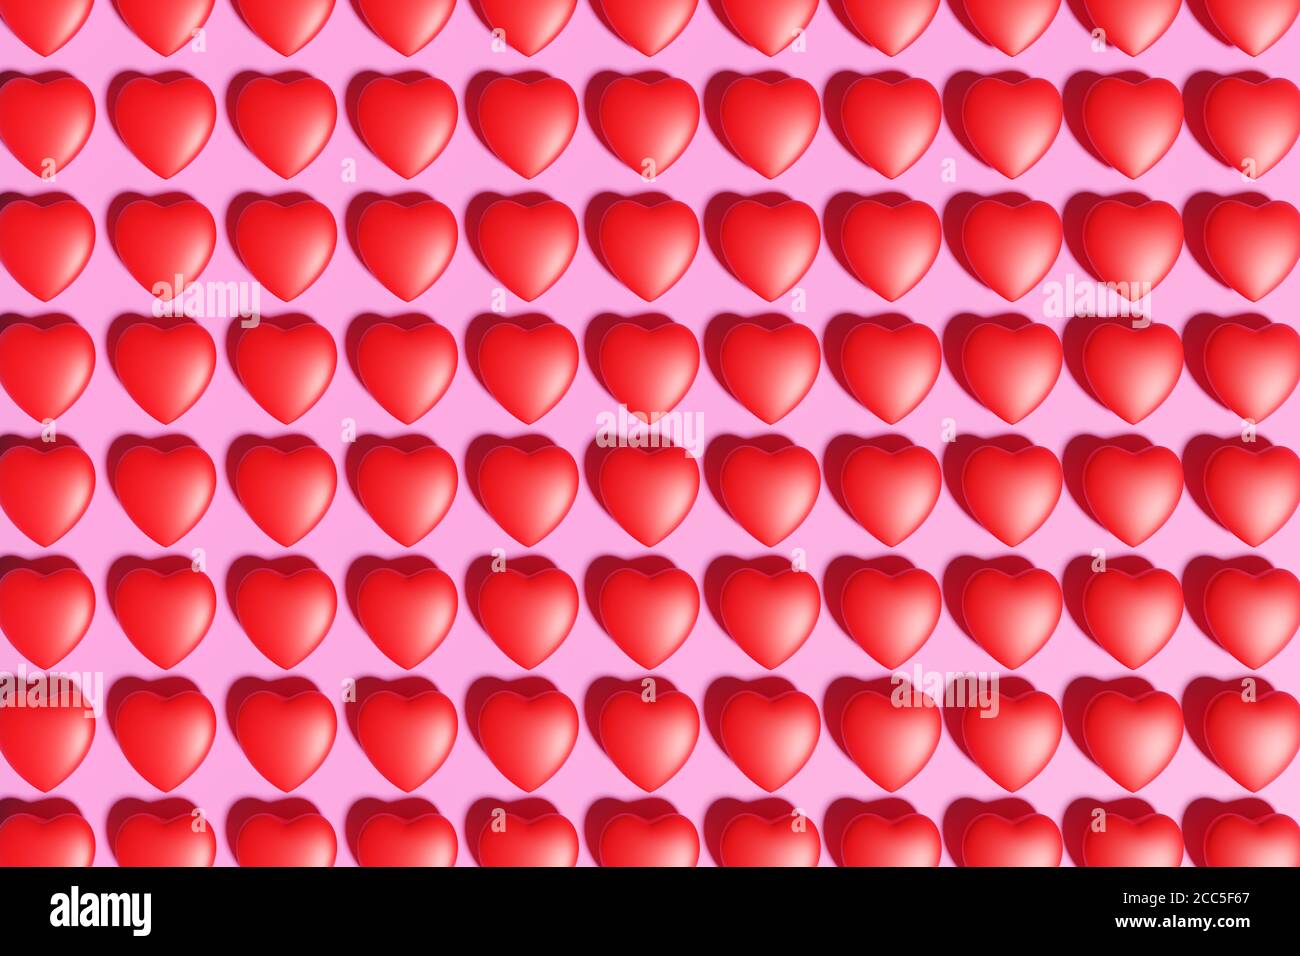 Rote Herzen Muster auf einem rosa Hintergrund. 3d-Illustration. Stockfoto